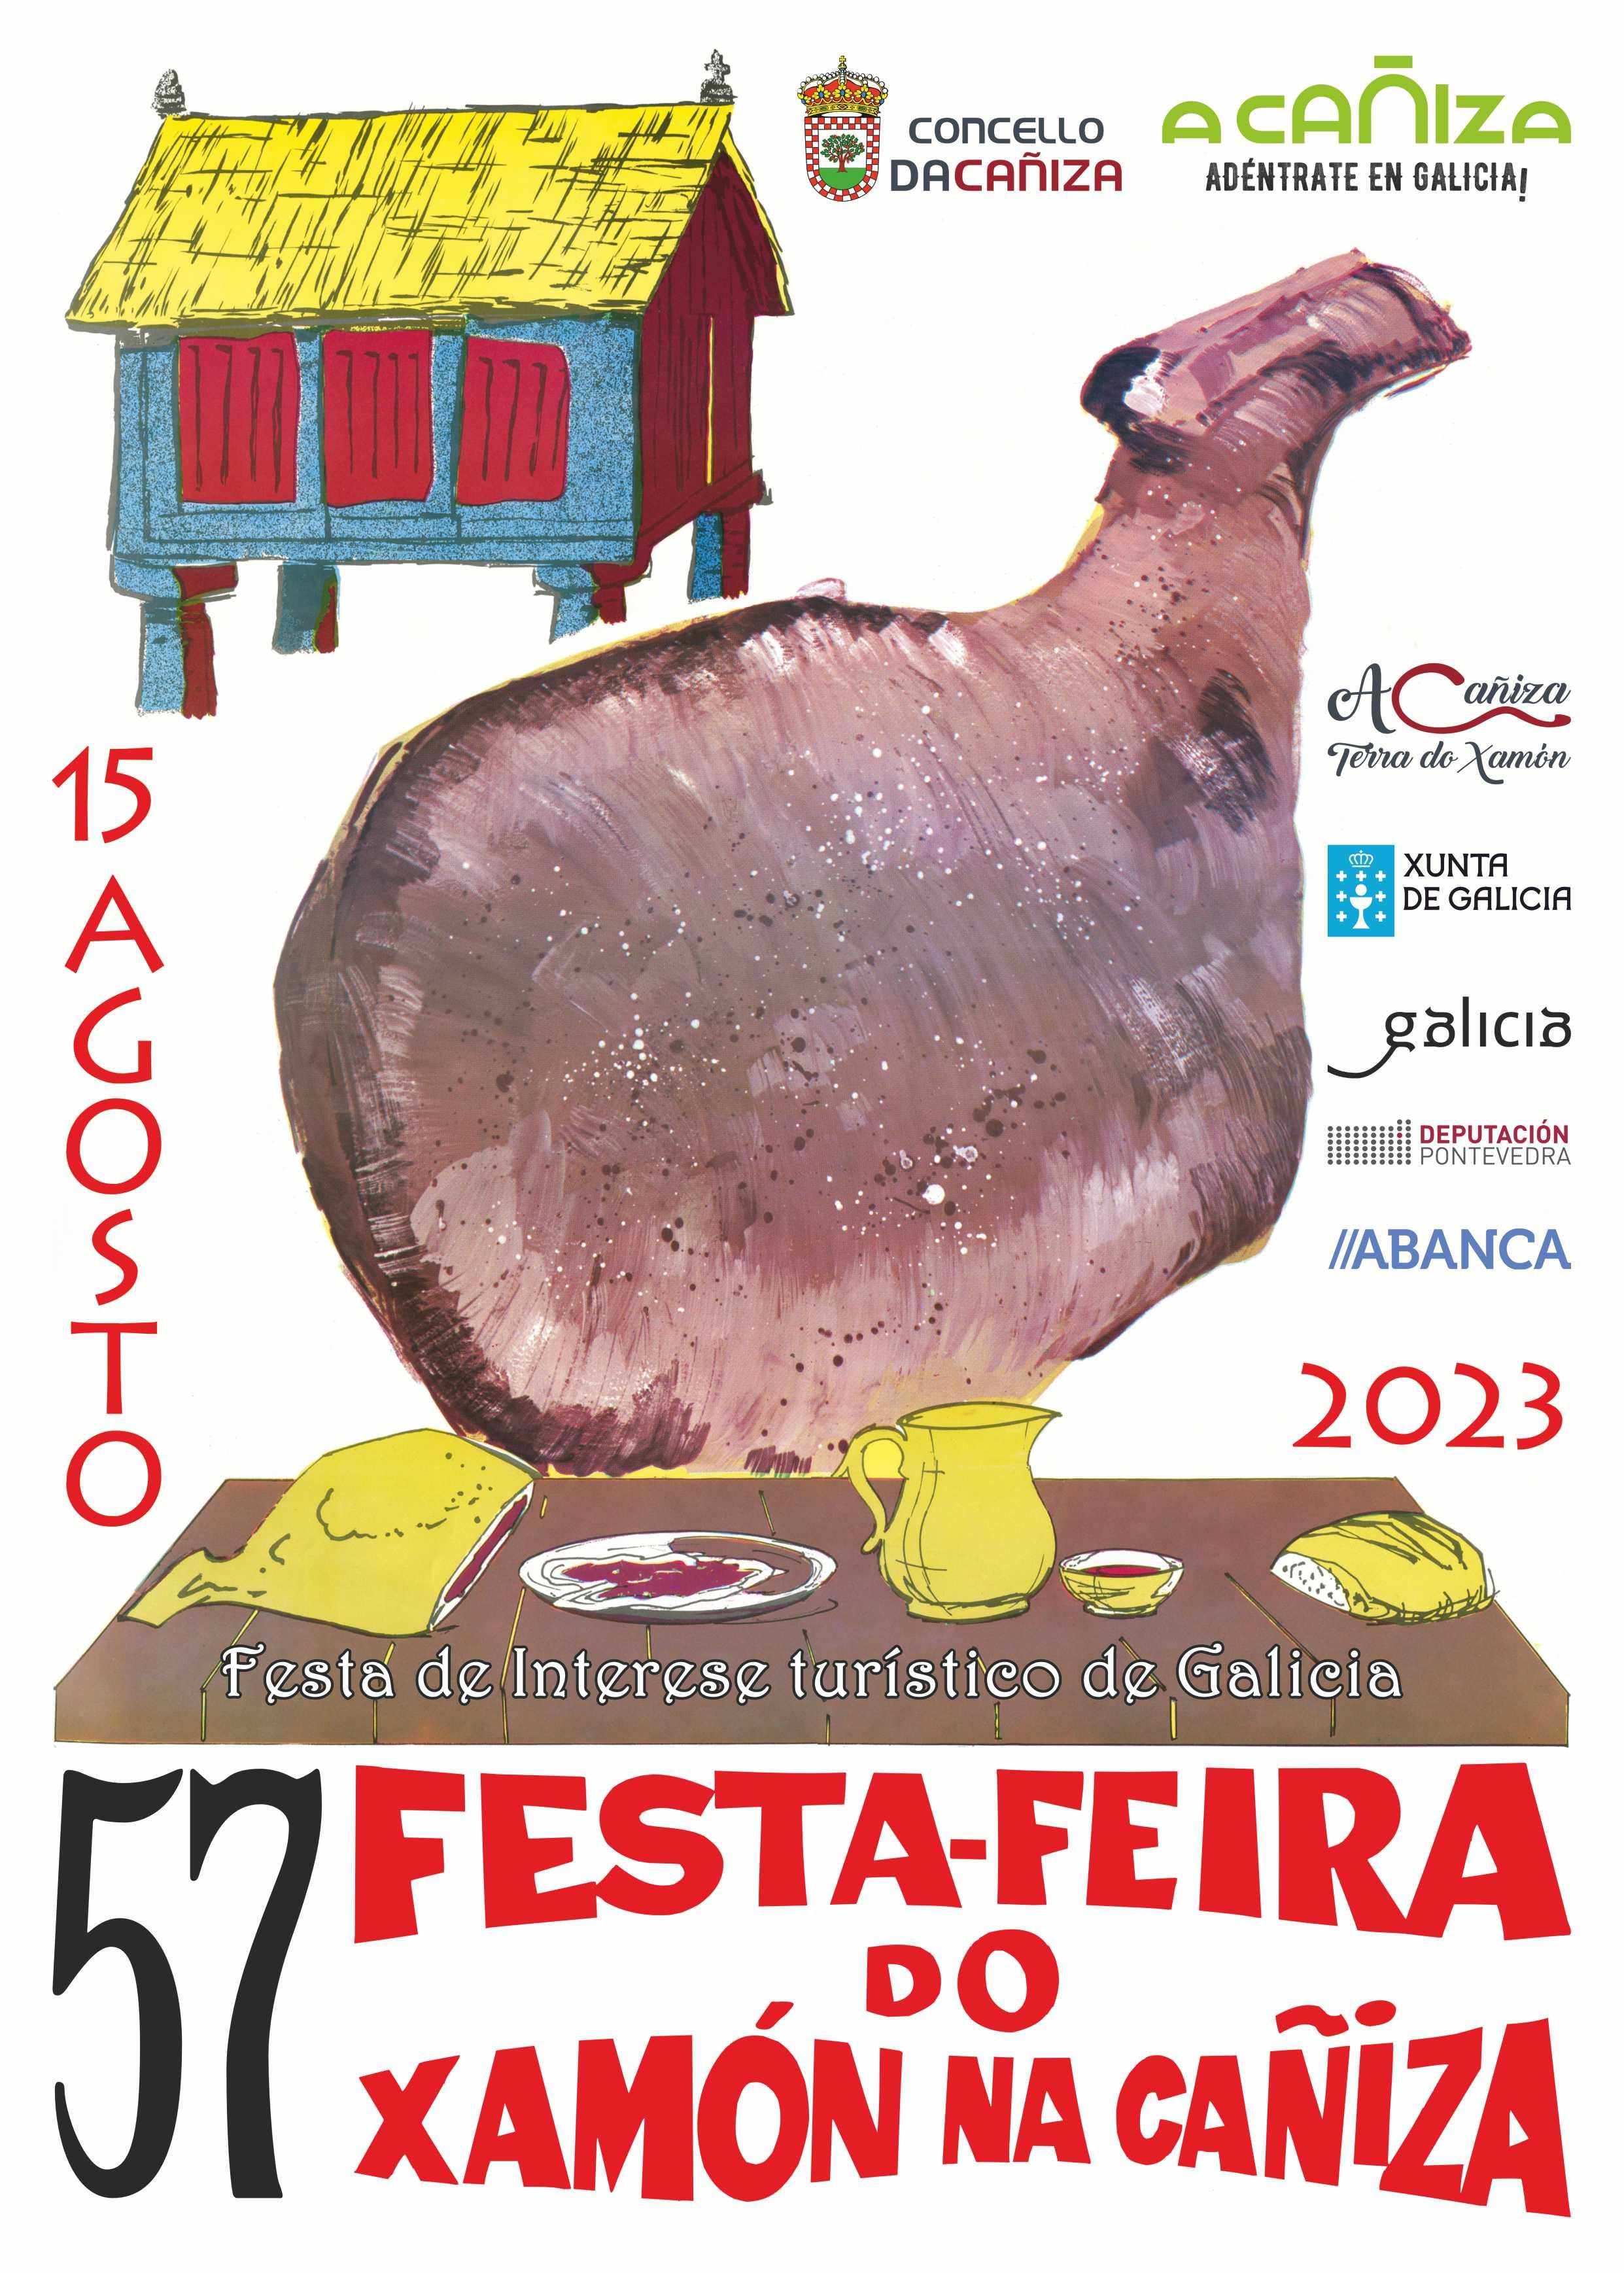 57 Edición da Festa - Feira do Xamón da Cañiza. Xornada Gastronómica do 15 de agosto de 2023